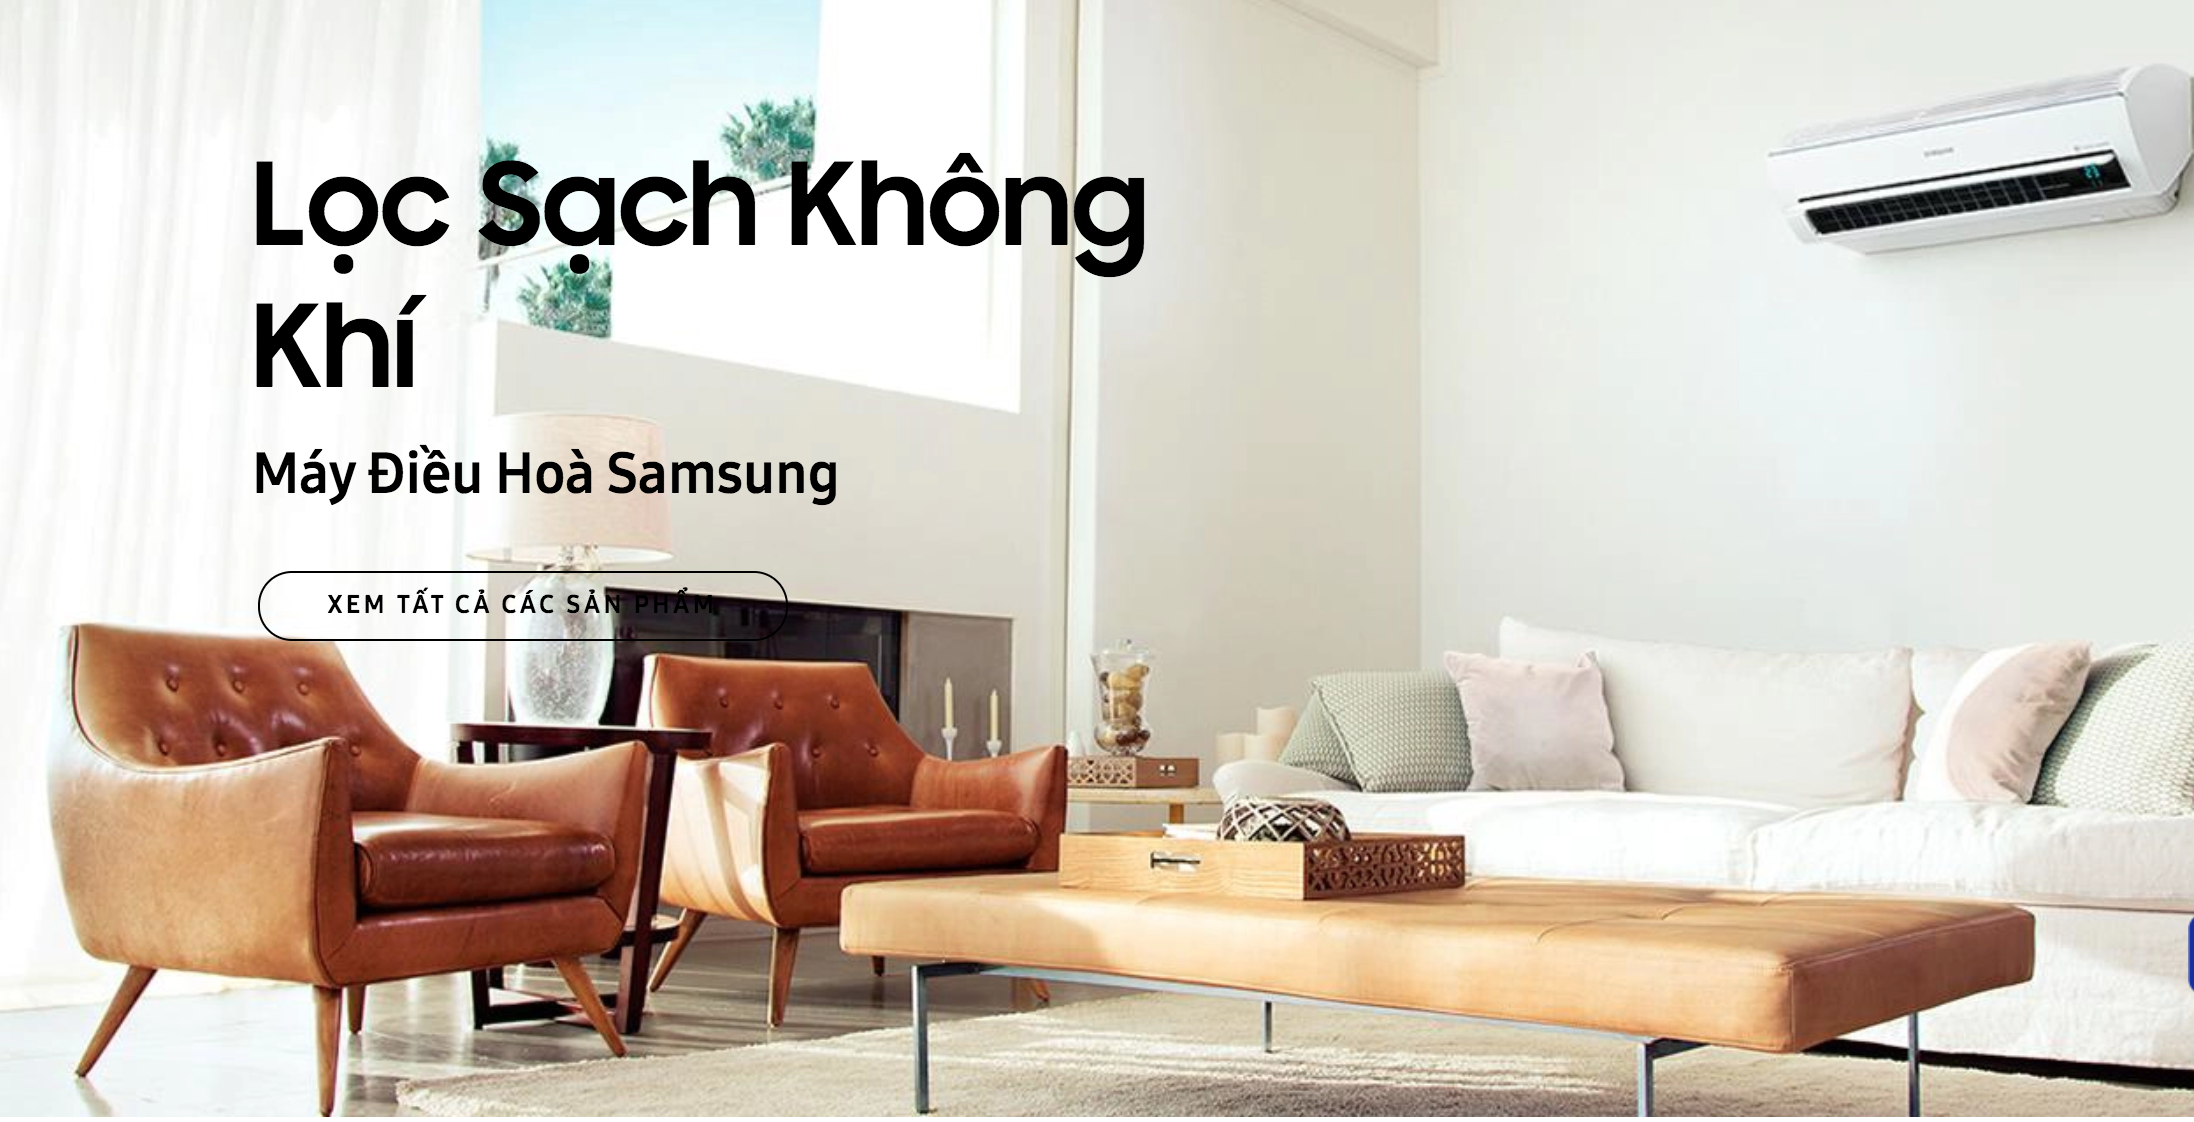 Điều hoà Samsung giúp lọc sạch không khí cho ngôi nhà của bạn